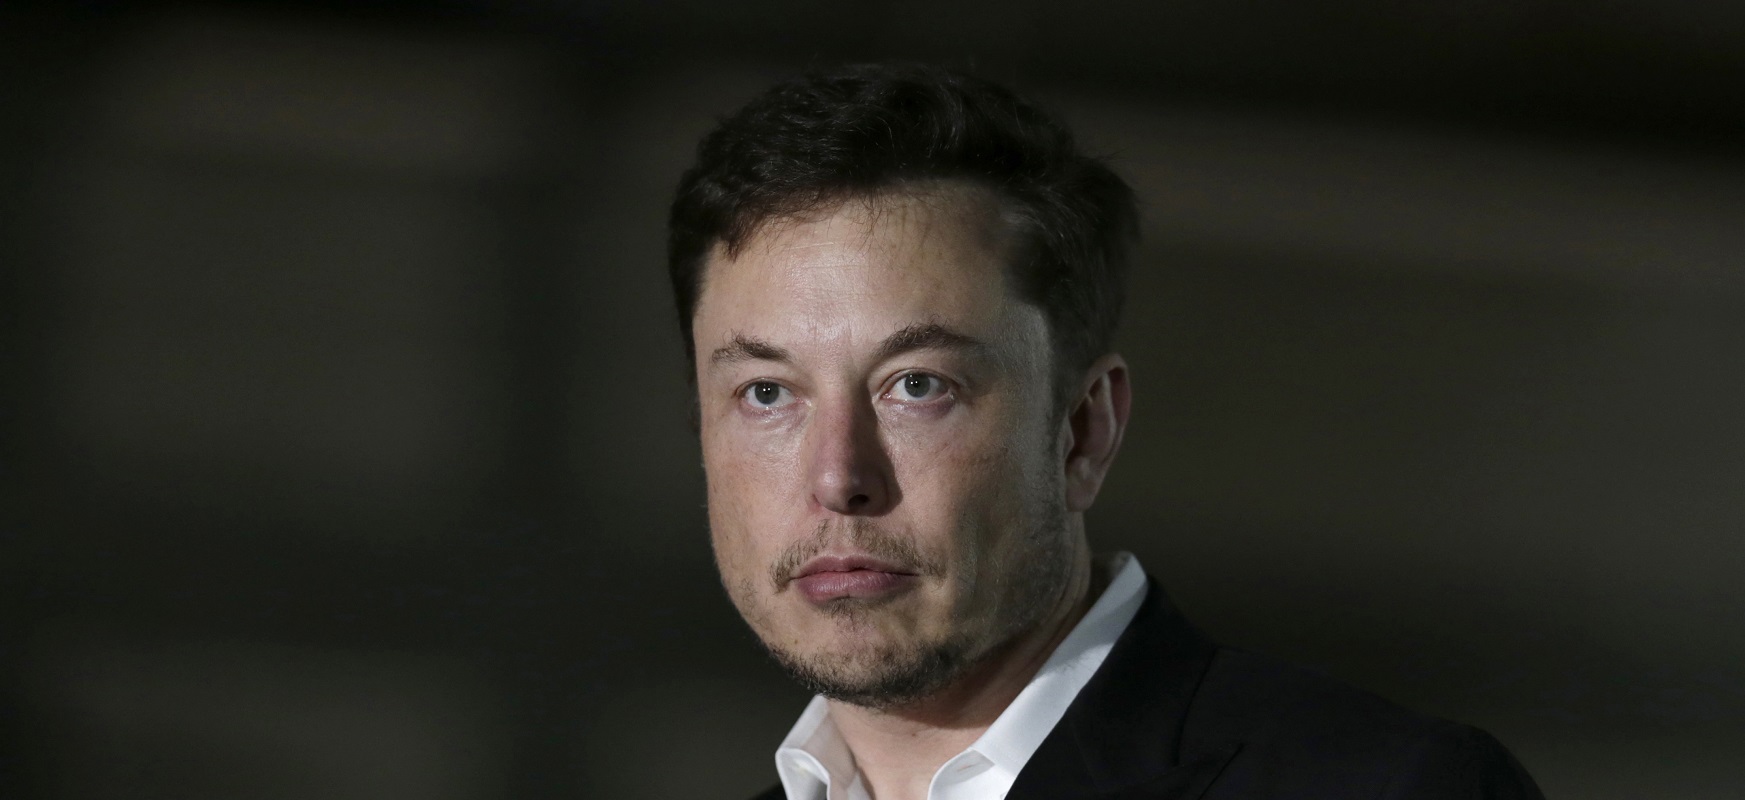  Elon Musk-ek honela dio: Tesla produkzioari ekin nion.  Ni atxilotu nazazu
